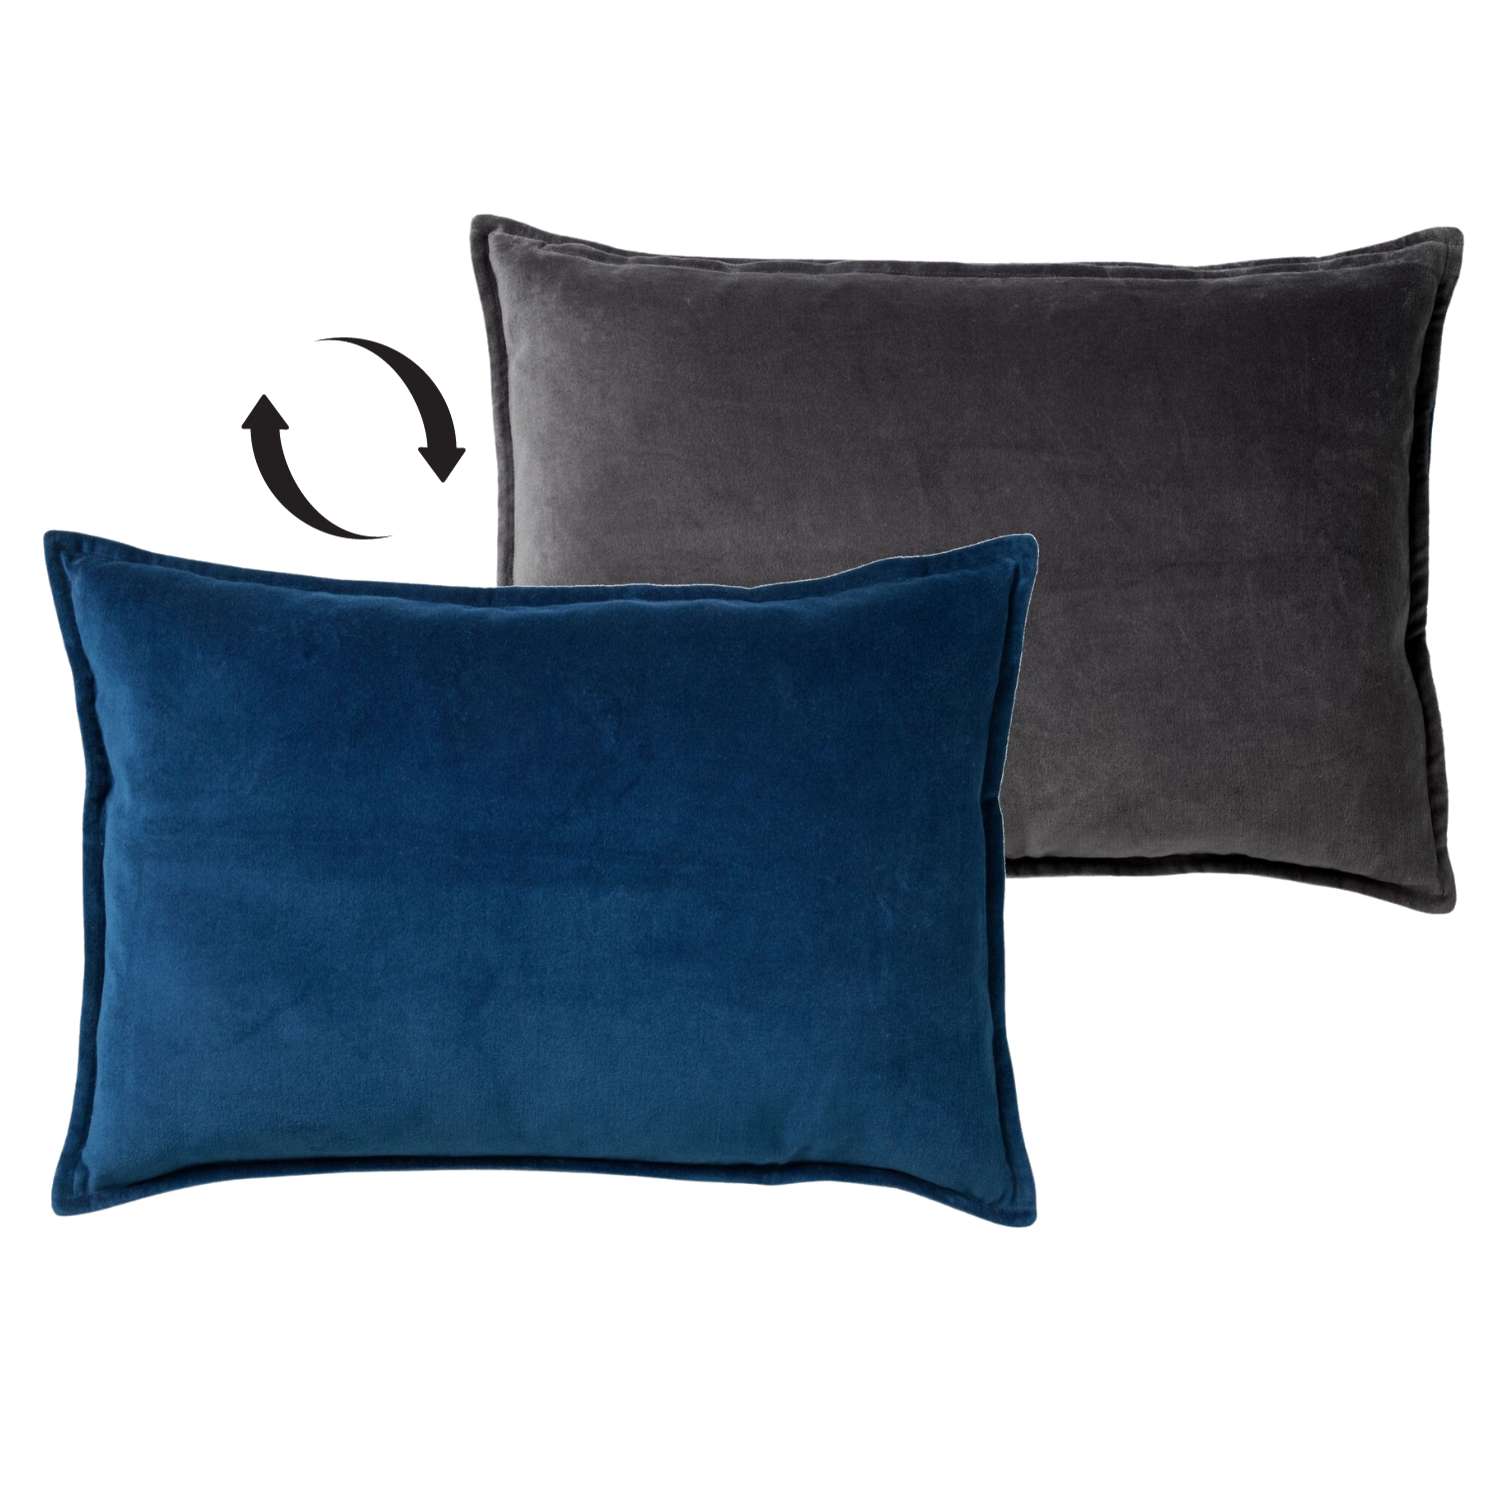 FAY - Sierkussen 40x60 cm - velvet met 2 kleuren - Insignia Blue + Charcoal Gray - blauw en antraciet